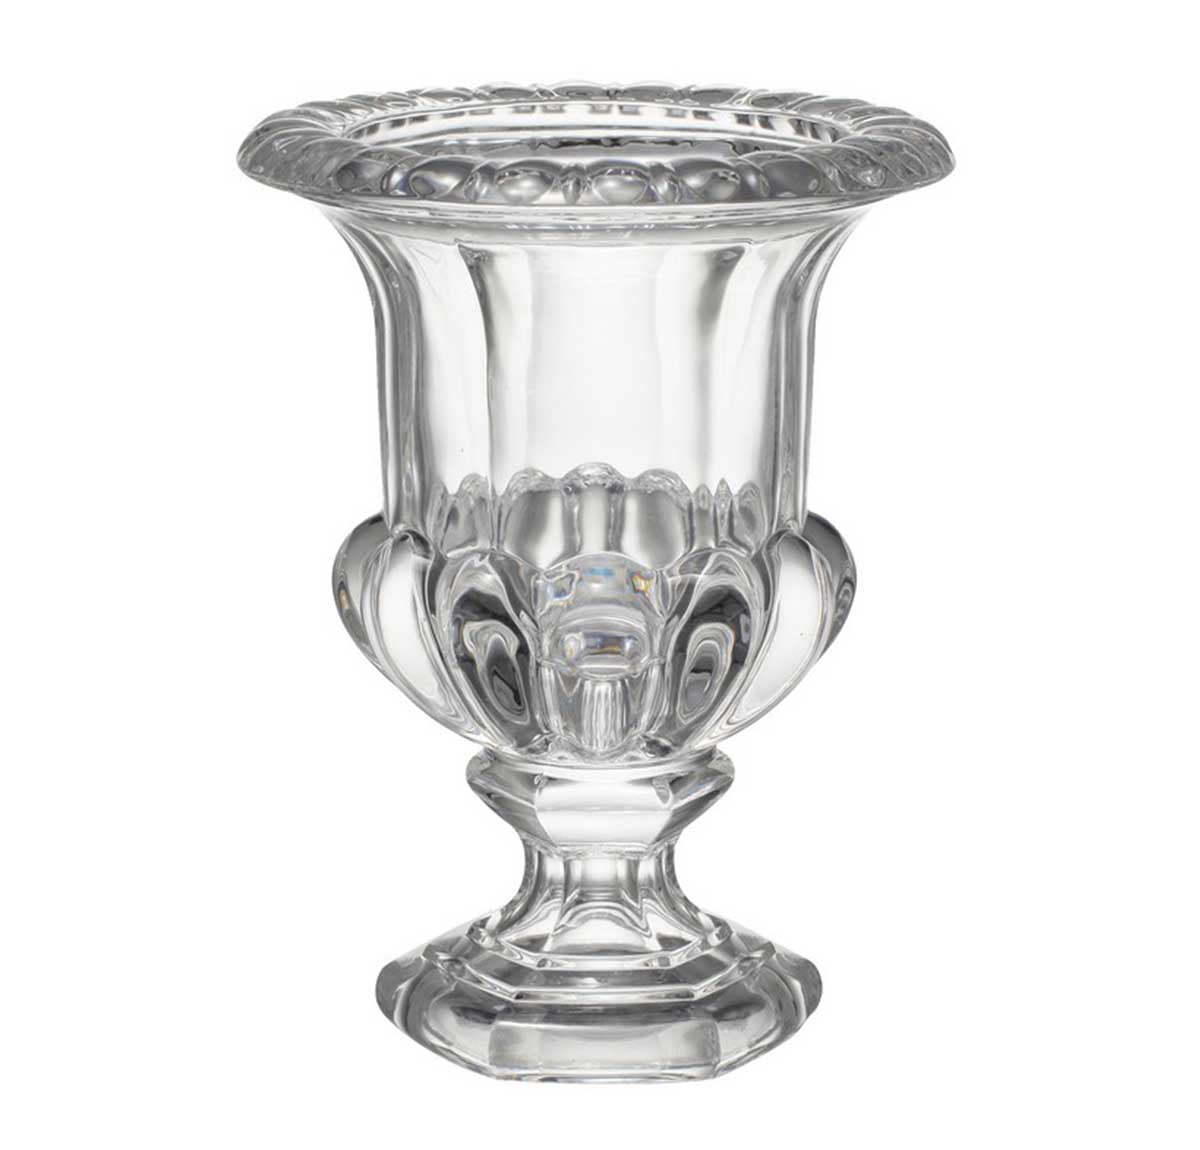 Omari Crystal Urn Vase - large | Urns & Vases | Home Decor